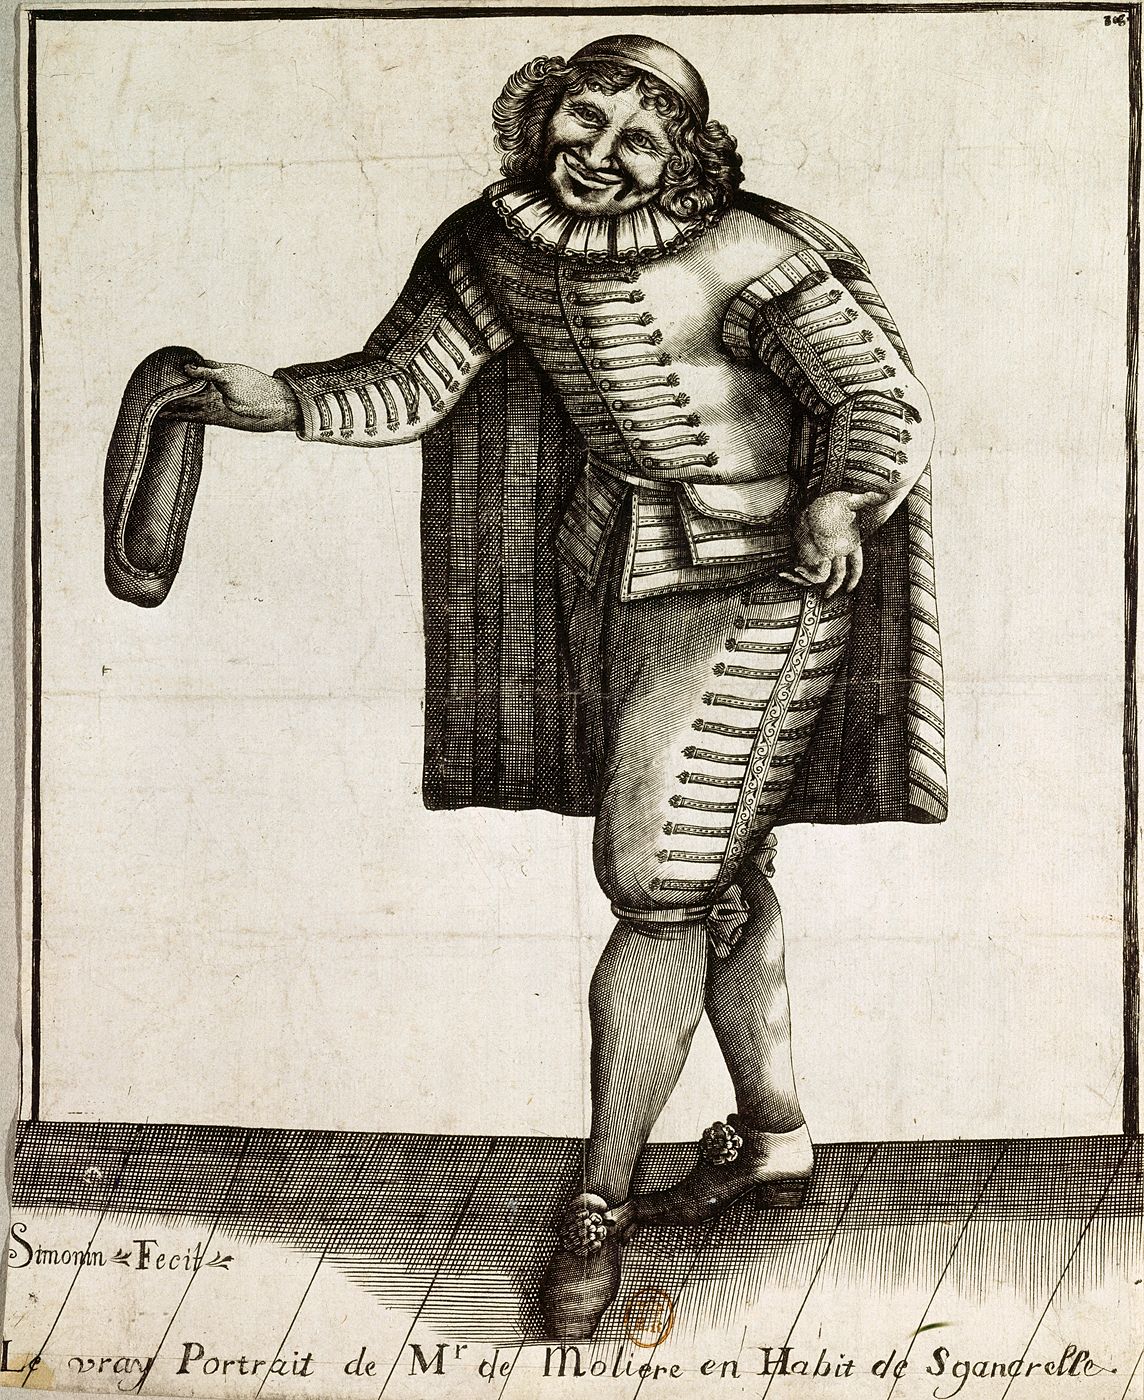 Le vray portrait de Mr de Molière en habit de Sganarelle. Claude SIMONIN (1635 - 1721)